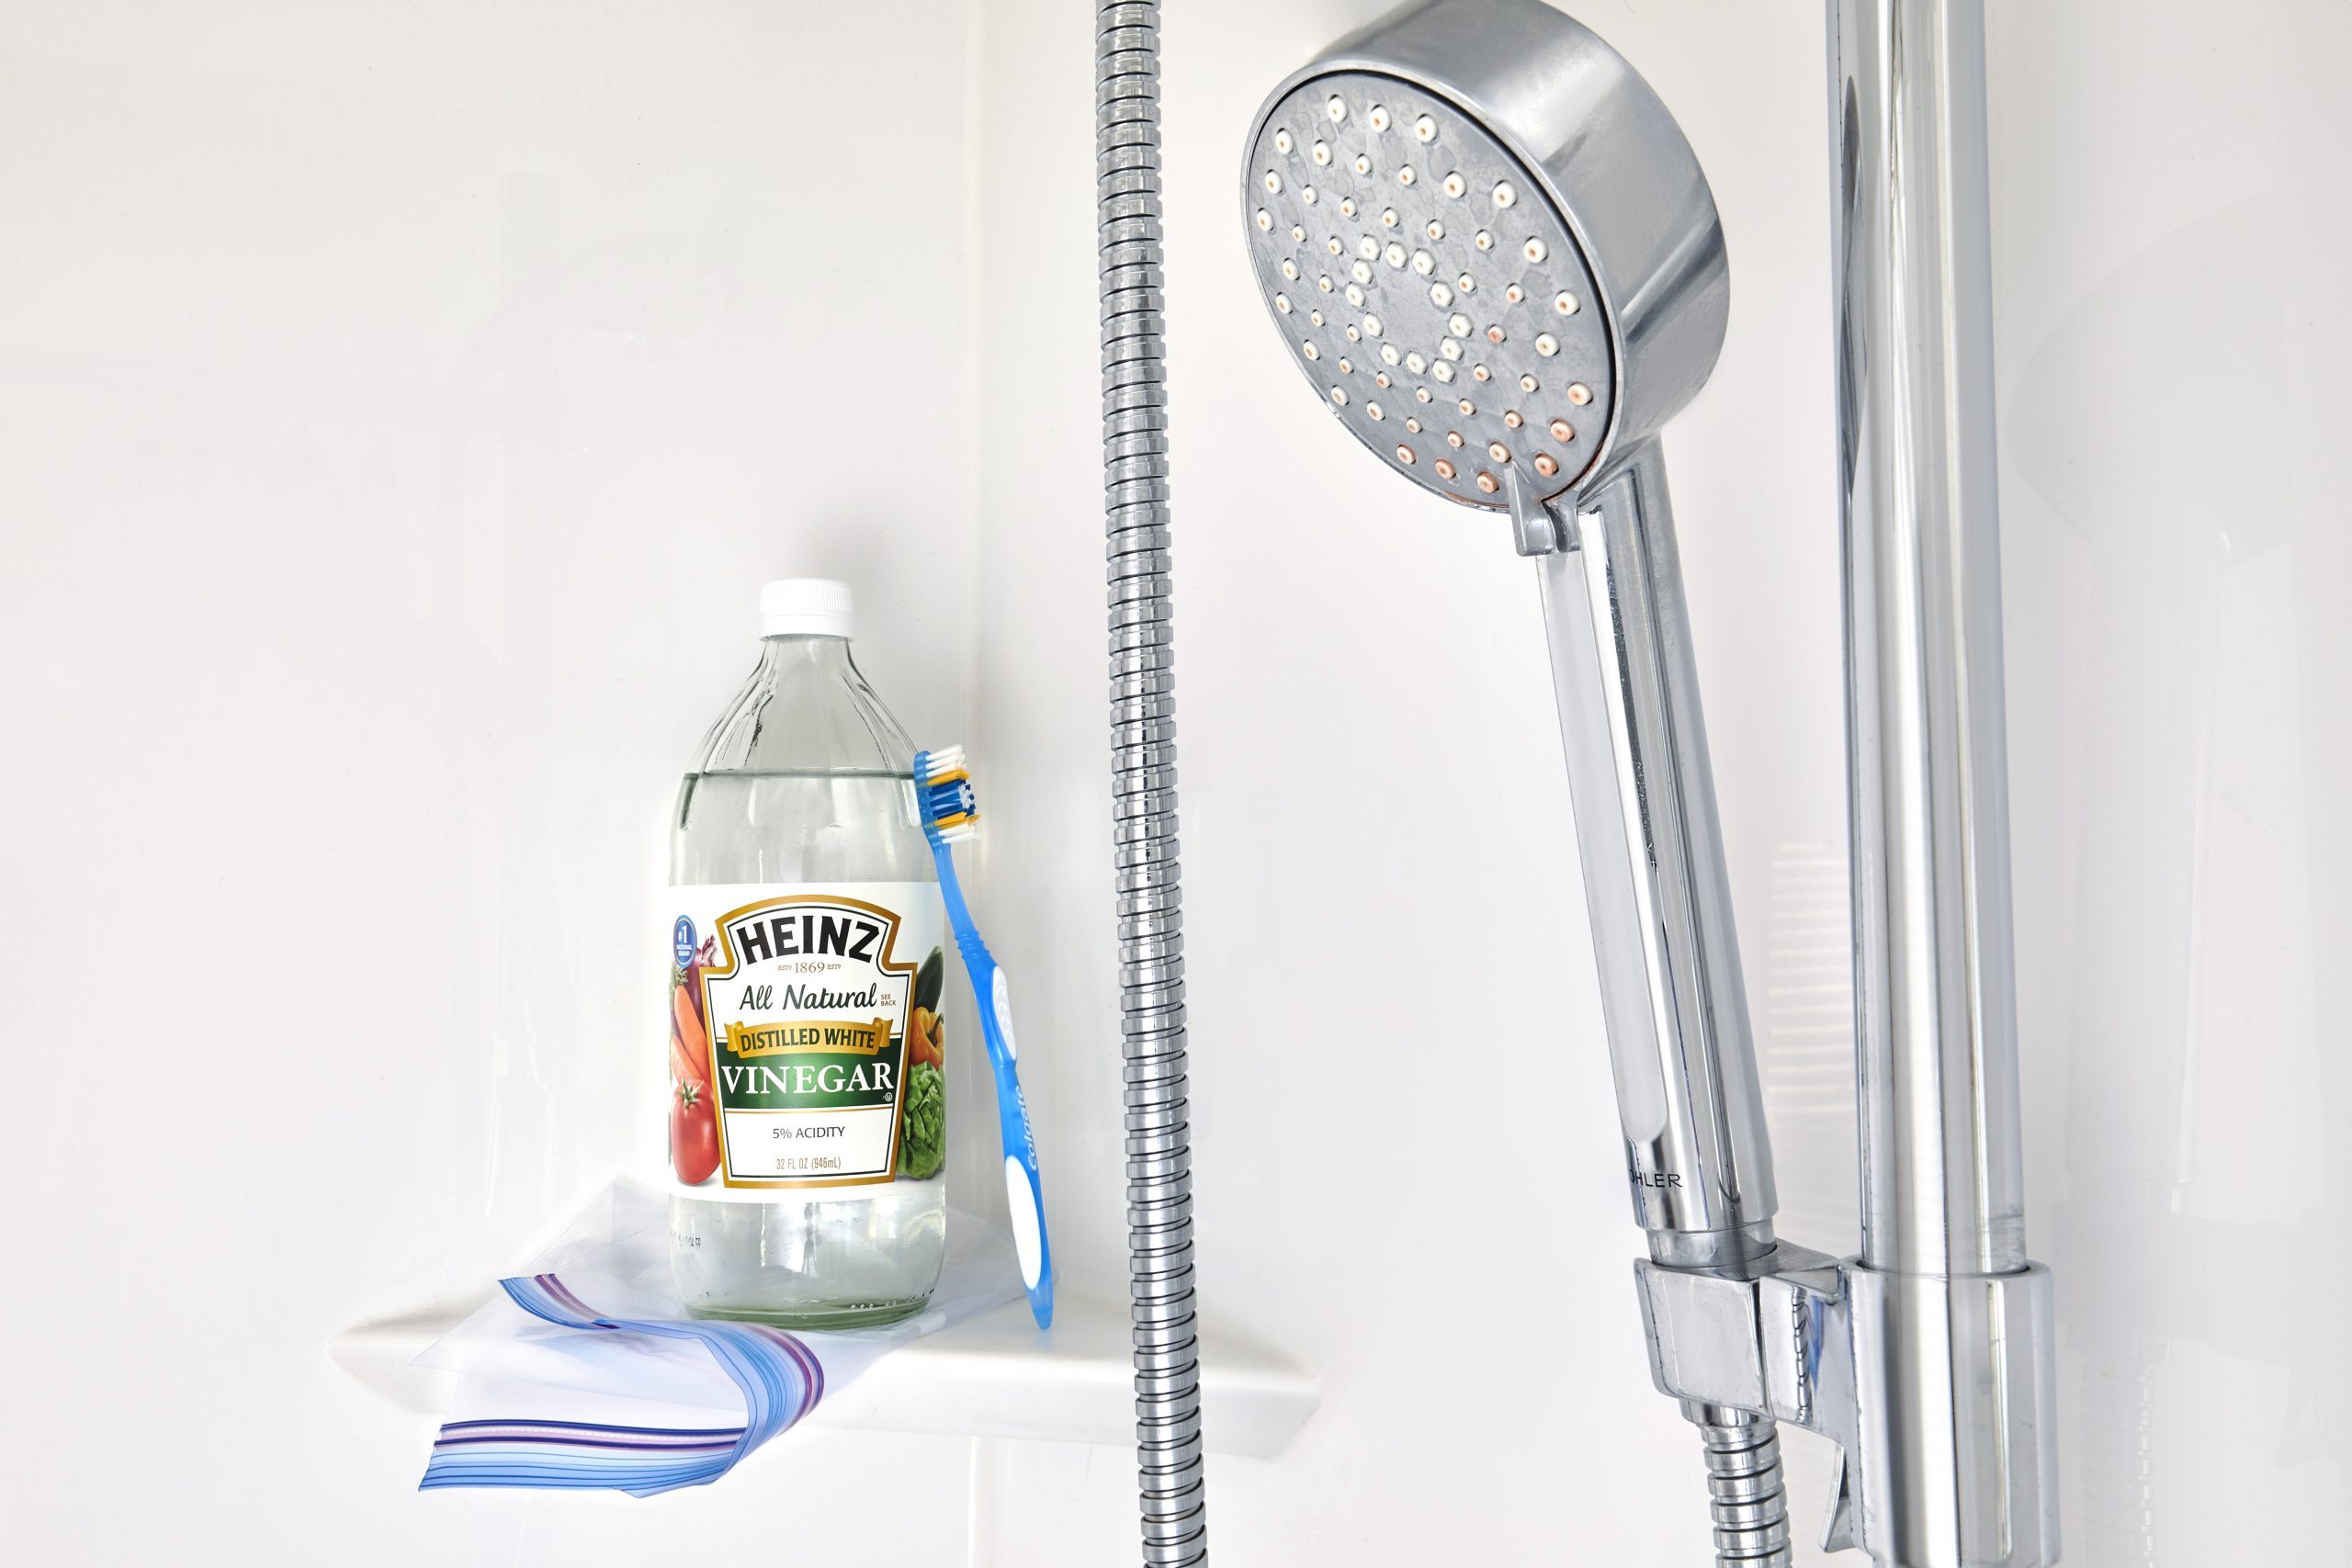 How to Clean a Faucet Head or Showerhead, Deep-Clean a Showerhead